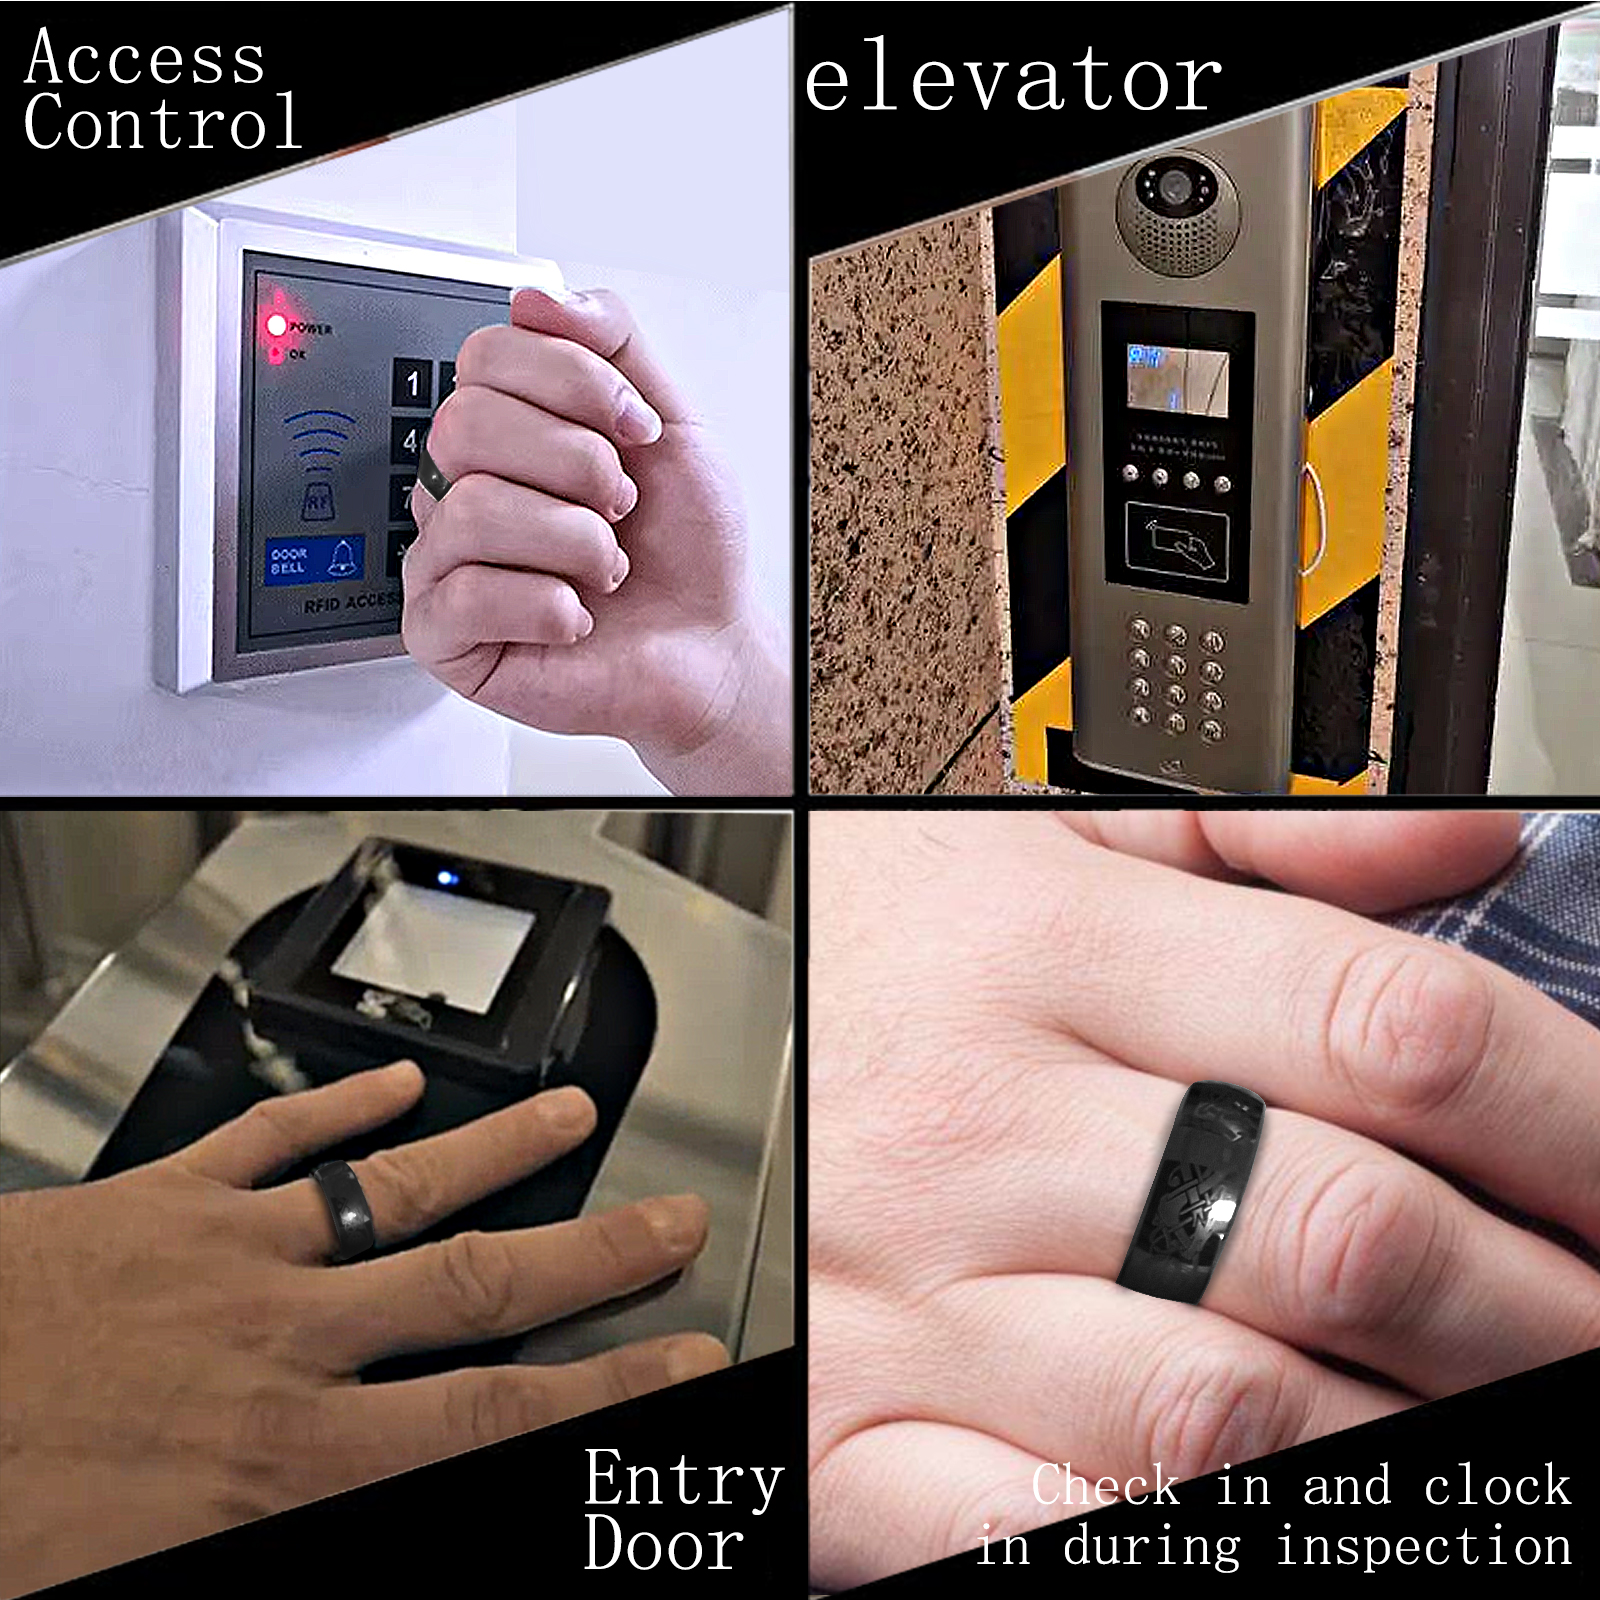 深圳市会员制餐厅俱乐部用RFID戒指IC智能饰品厂家会员制餐厅俱乐部用RFID戒指IC智能饰品